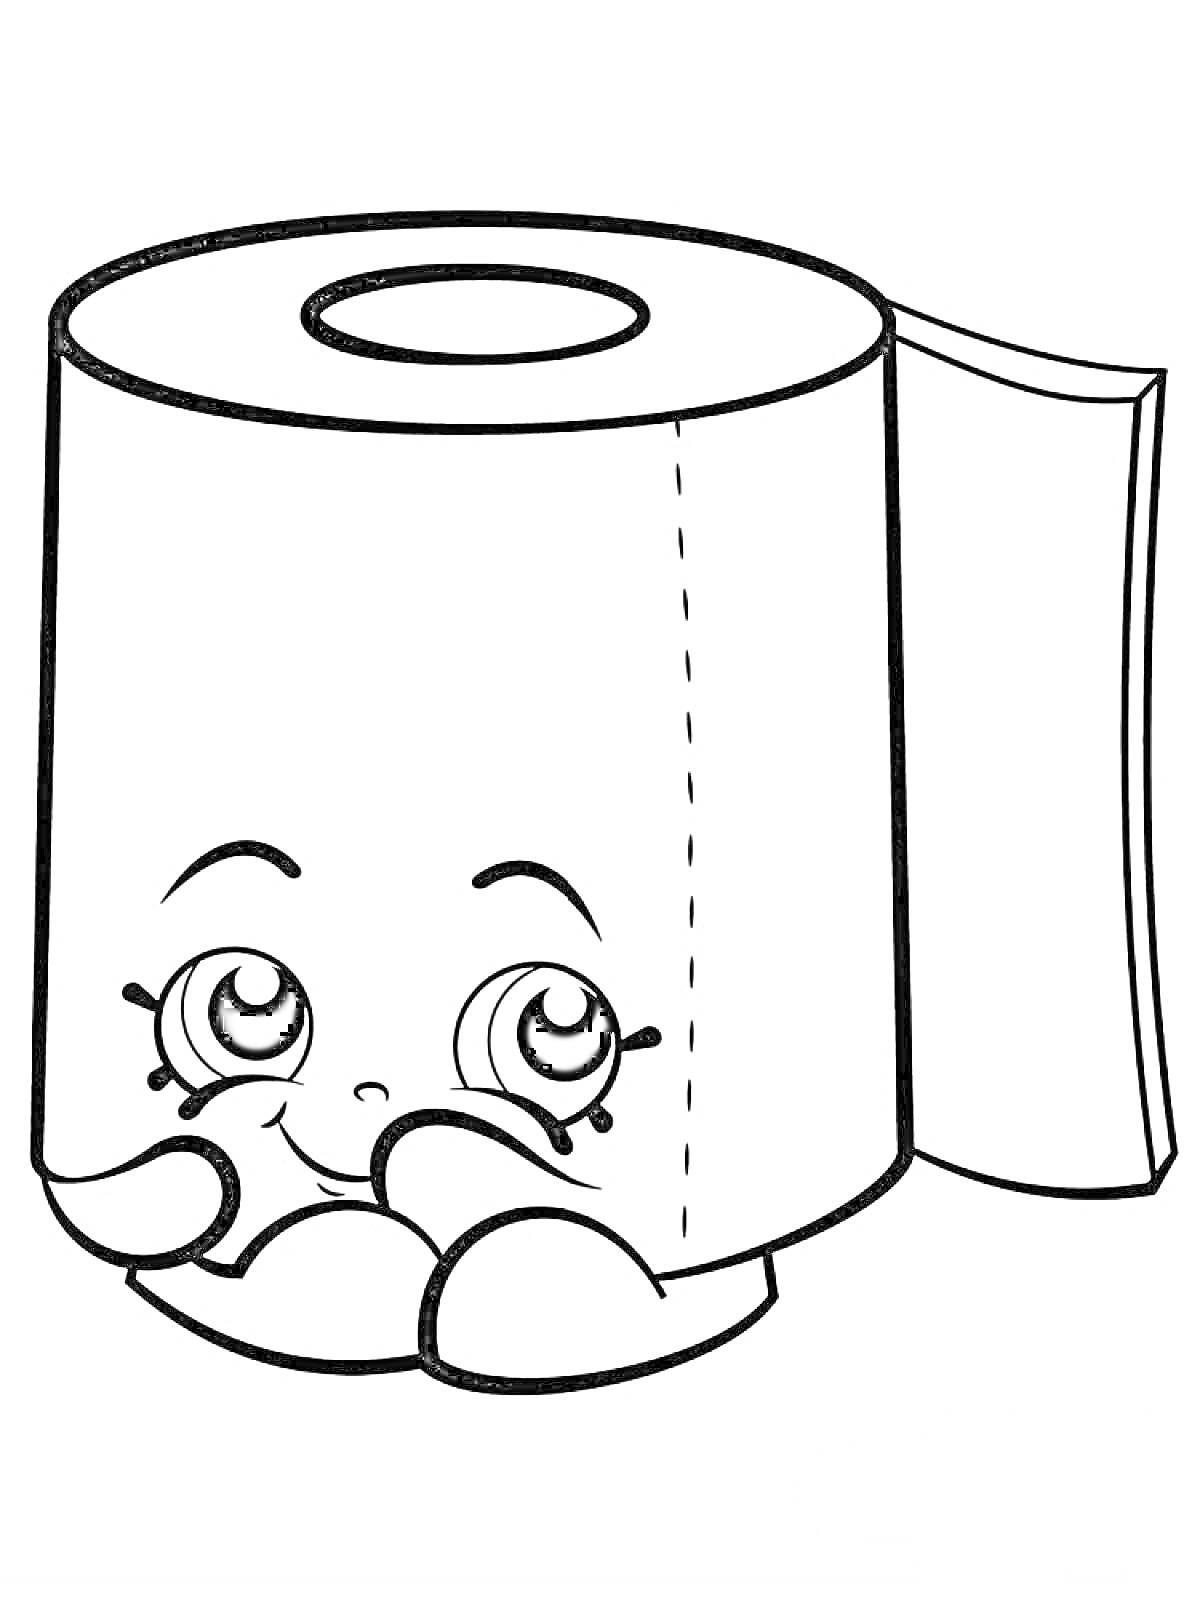 Рулон туалетной бумаги с лицом и руками